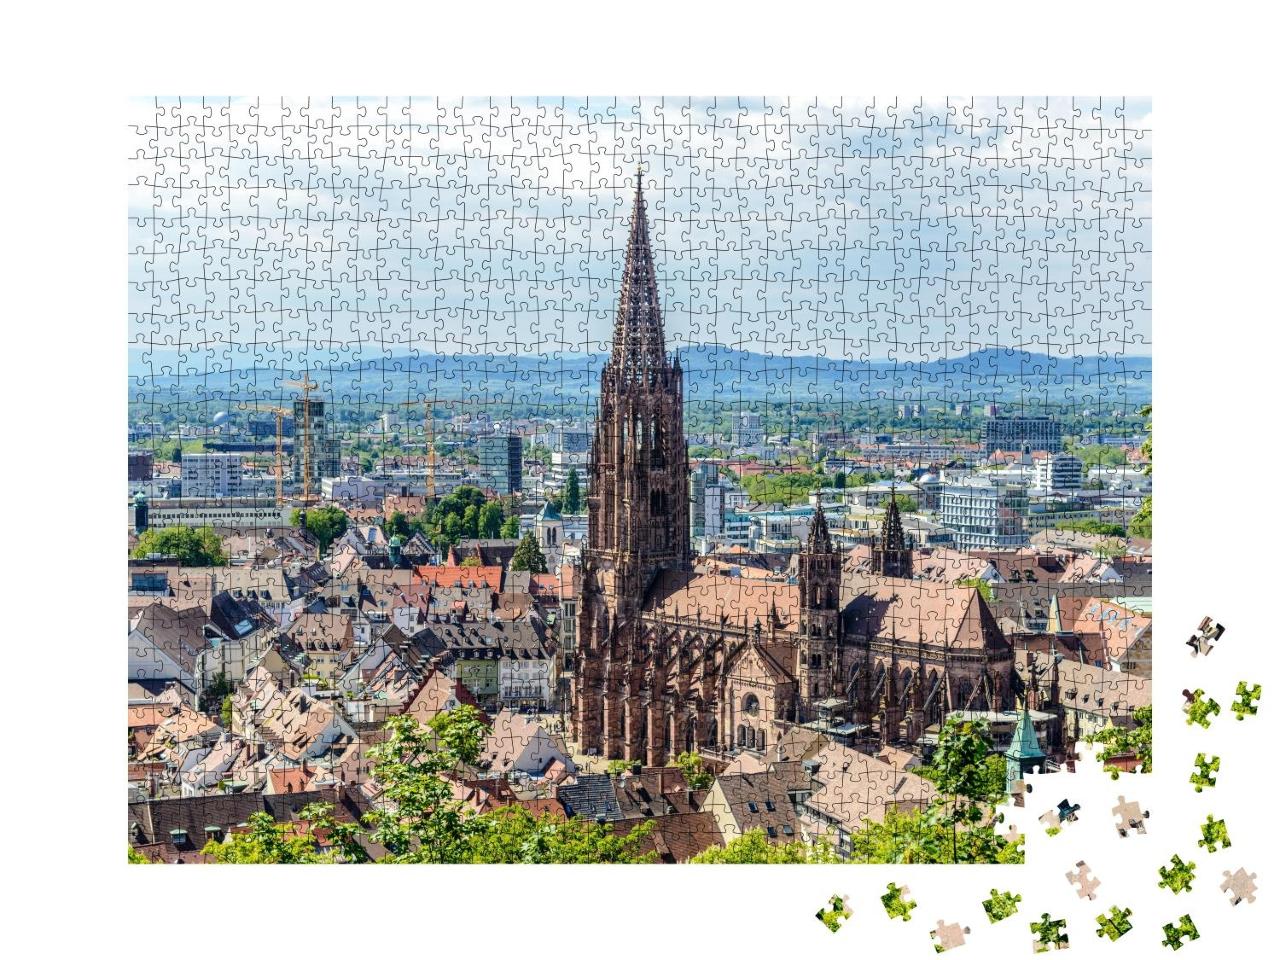 Puzzle 1000 Teile „Freiburg im Breisgau mit Freiburger Münster“